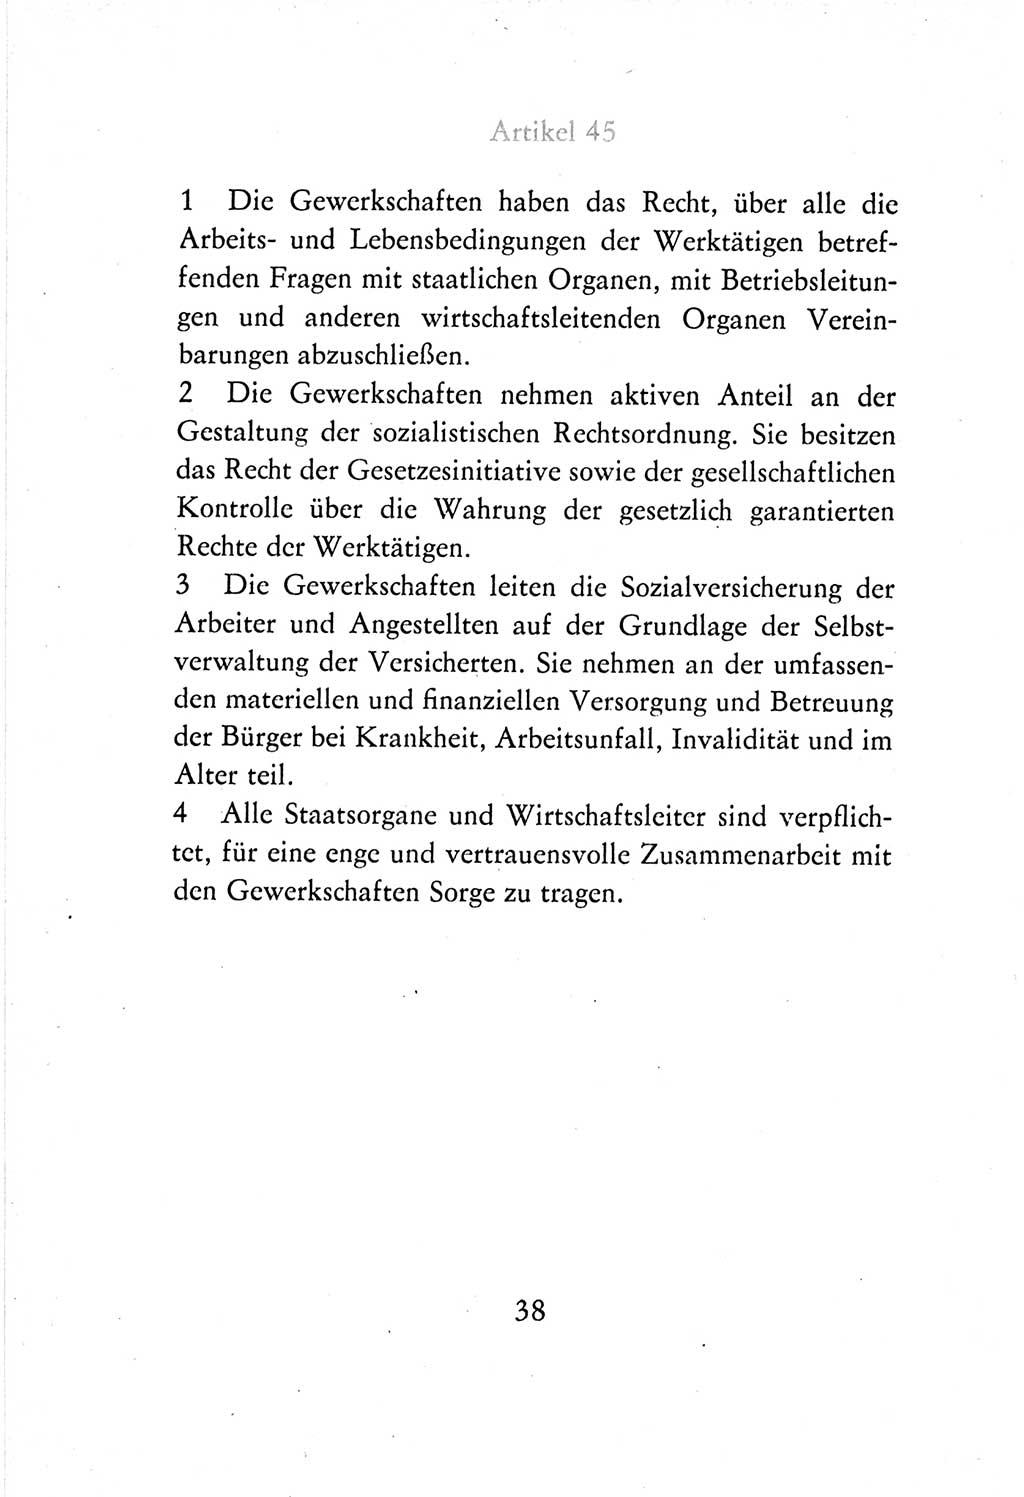 Verfassung der Deutschen Demokratischen Republik (DDR) vom 7. Oktober 1974, Seite 38 (Verf. DDR 1974, S. 38)